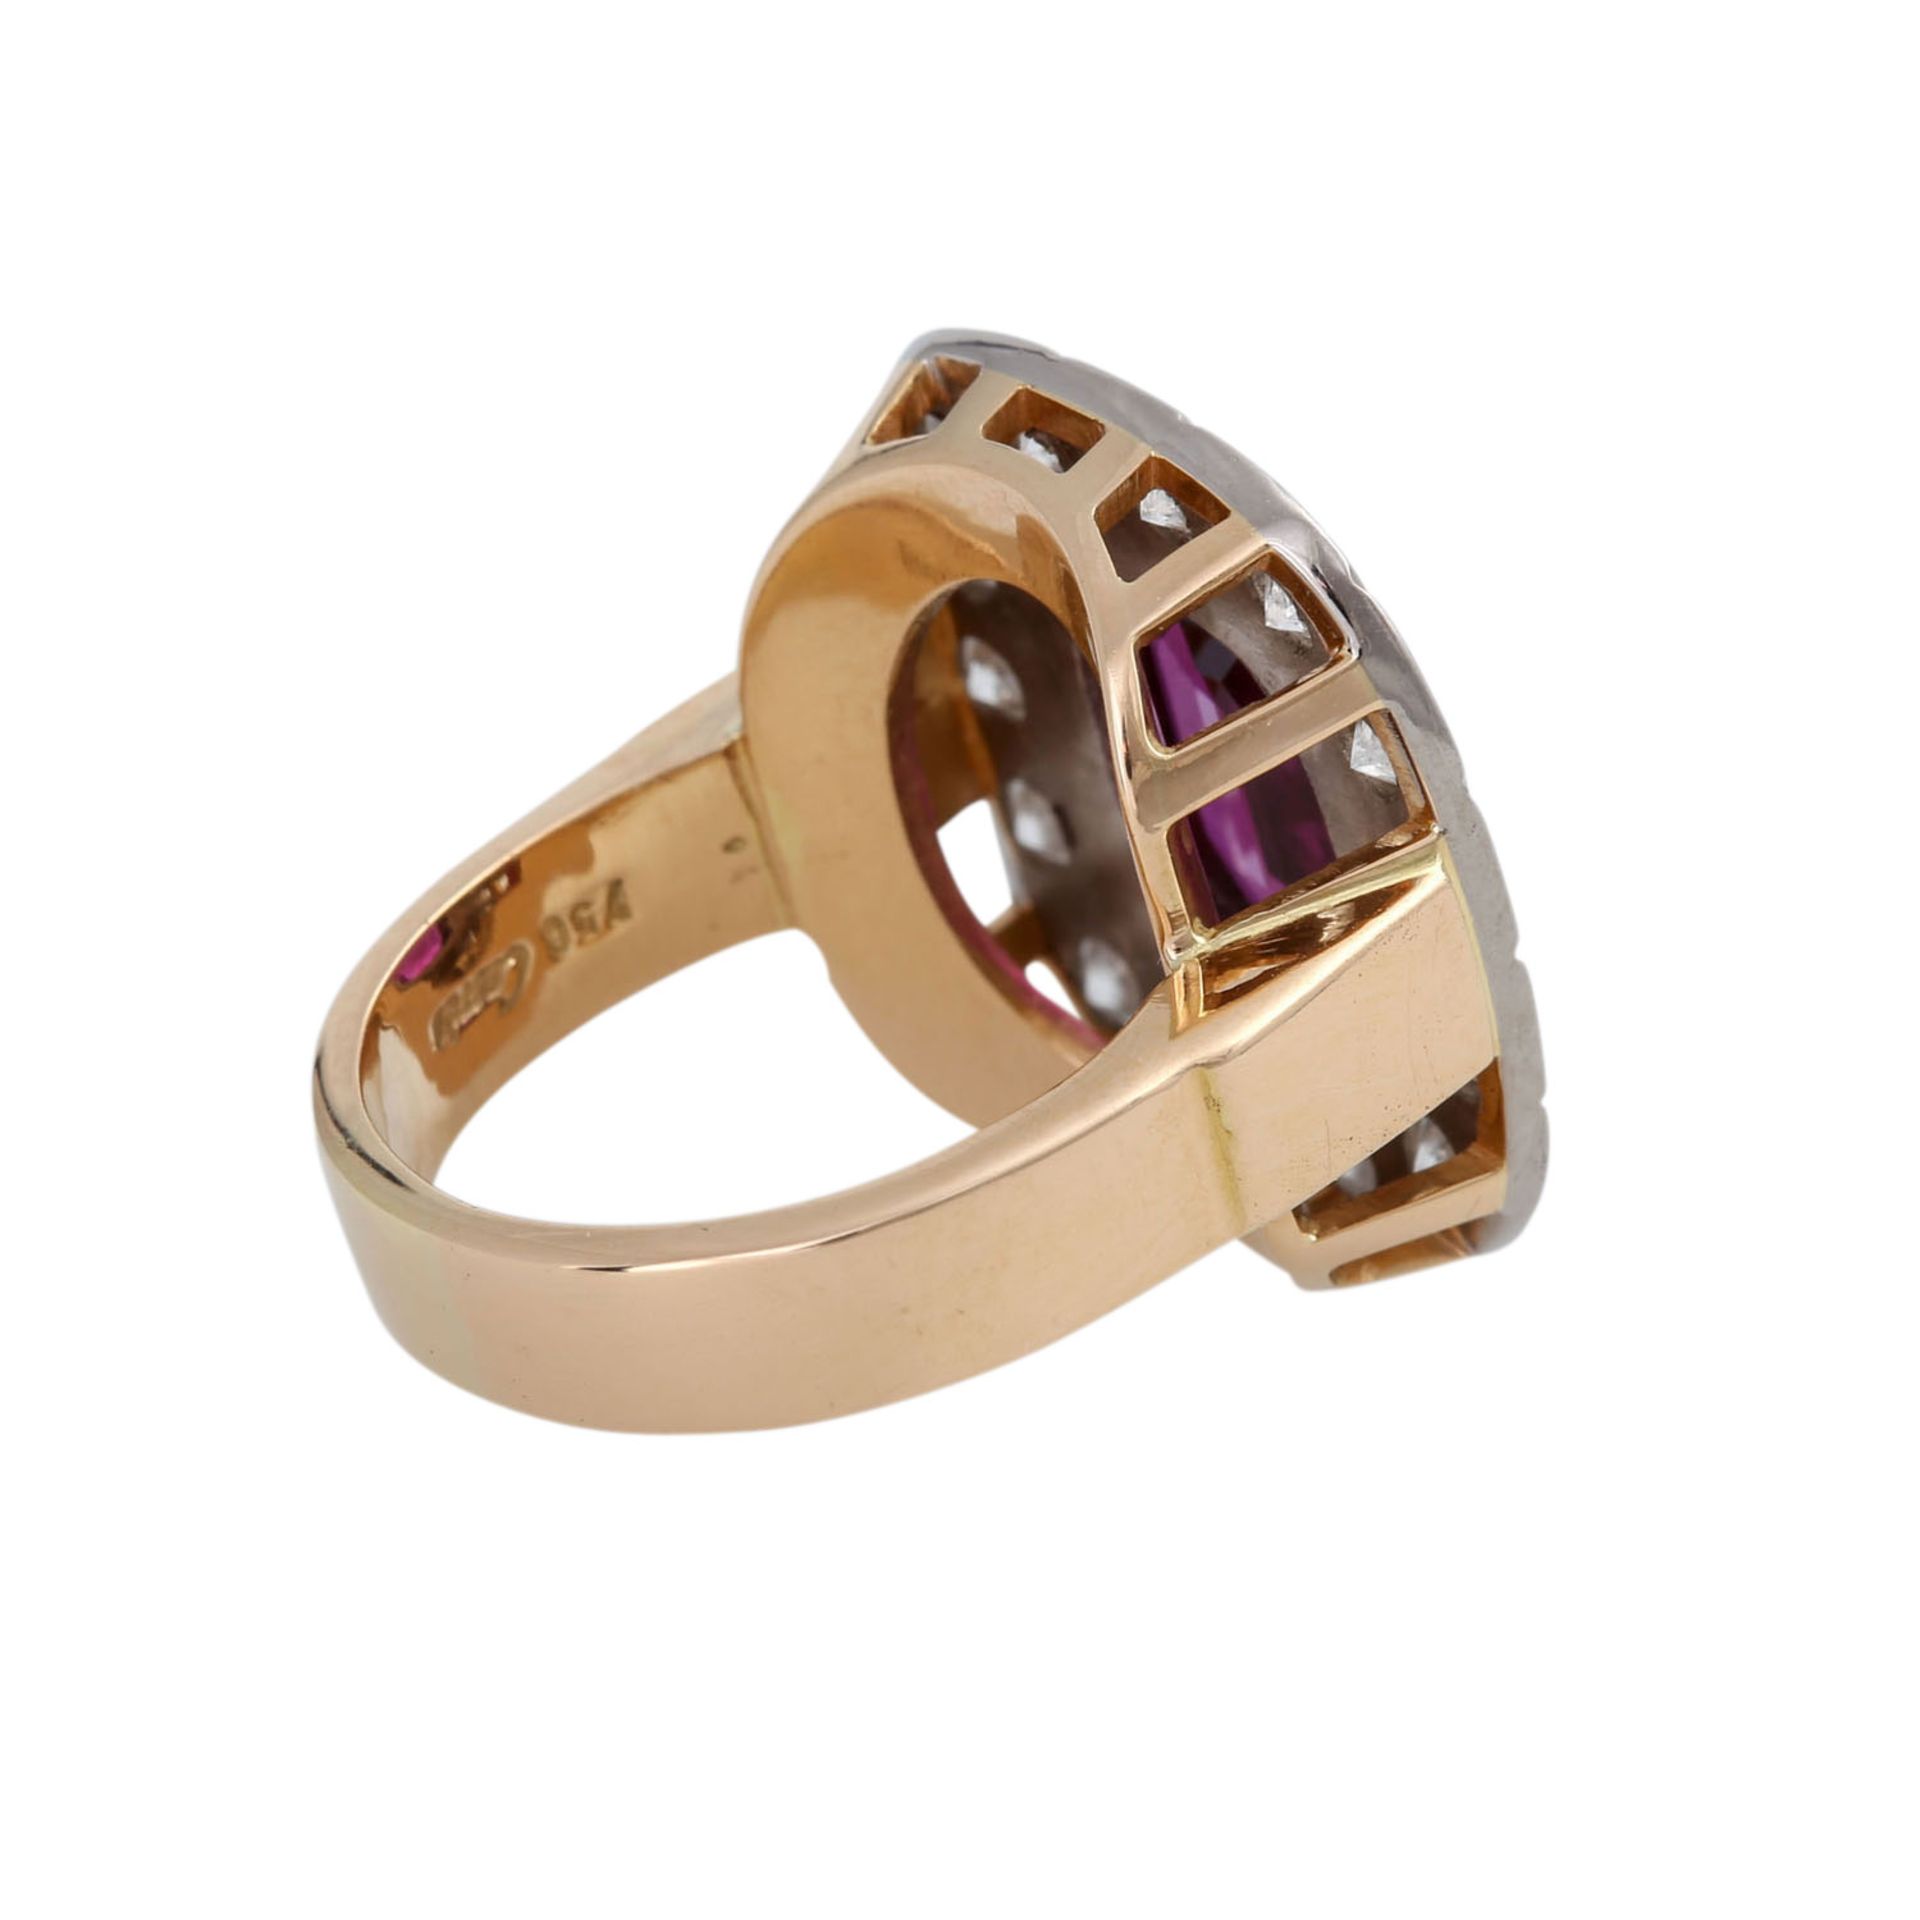 Ring mit Rubin ca. 4,5 ct und Brillantenvon zus. ca. 2 ct, WEISS (H)/VS, WG/GG 18K, RW: 60, Ringkopf - Bild 3 aus 5